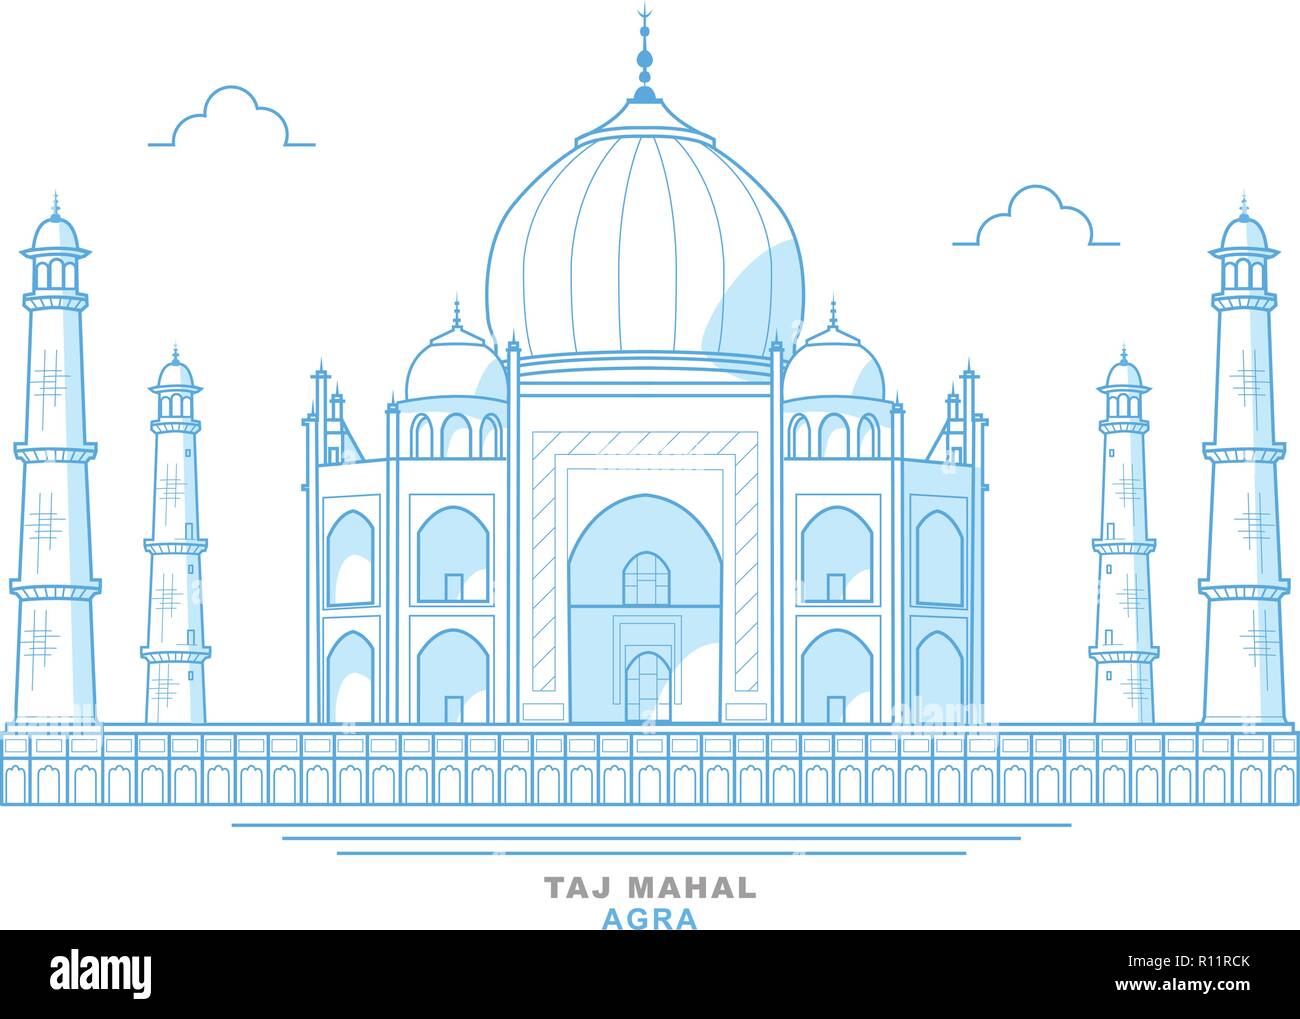 Dessin du Taj Mahal, stylisée, bleu, d'un mausolée dans la ville d'Agra, Inde. Joyau de l'art musulman en Inde Illustration de Vecteur